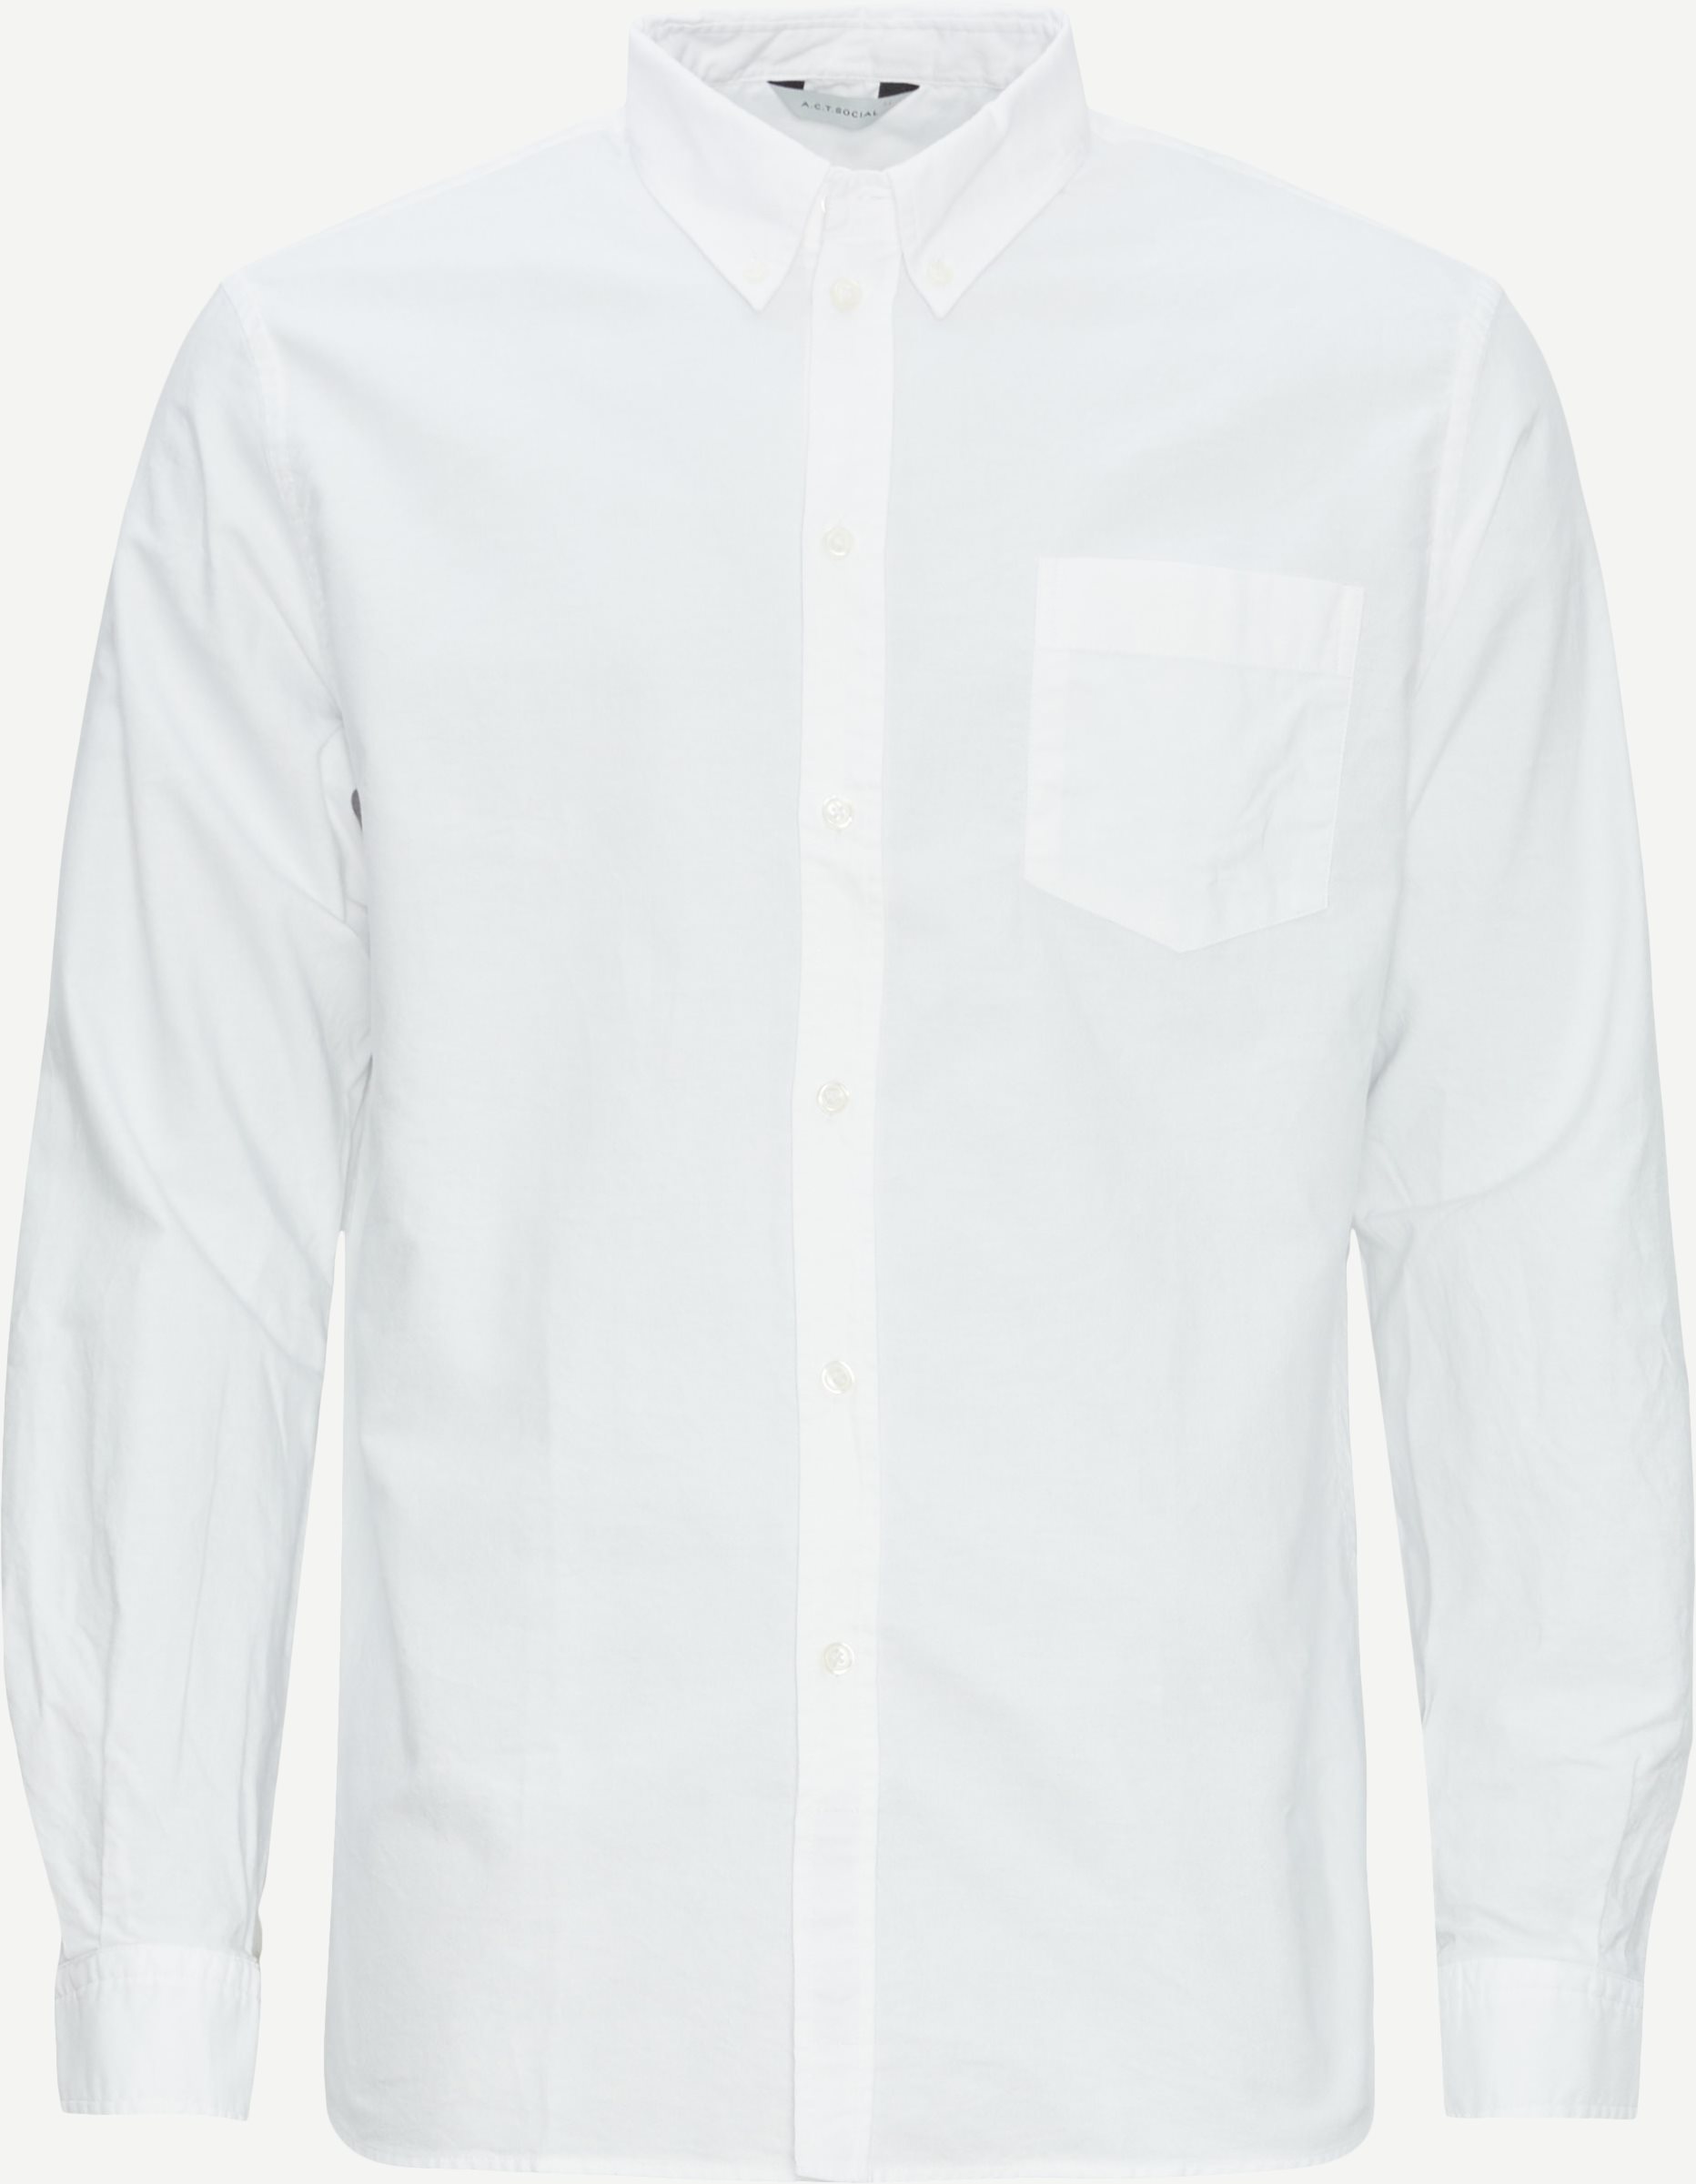 A.C.T. SOCIAL Shirts DAWSON AS1025 White